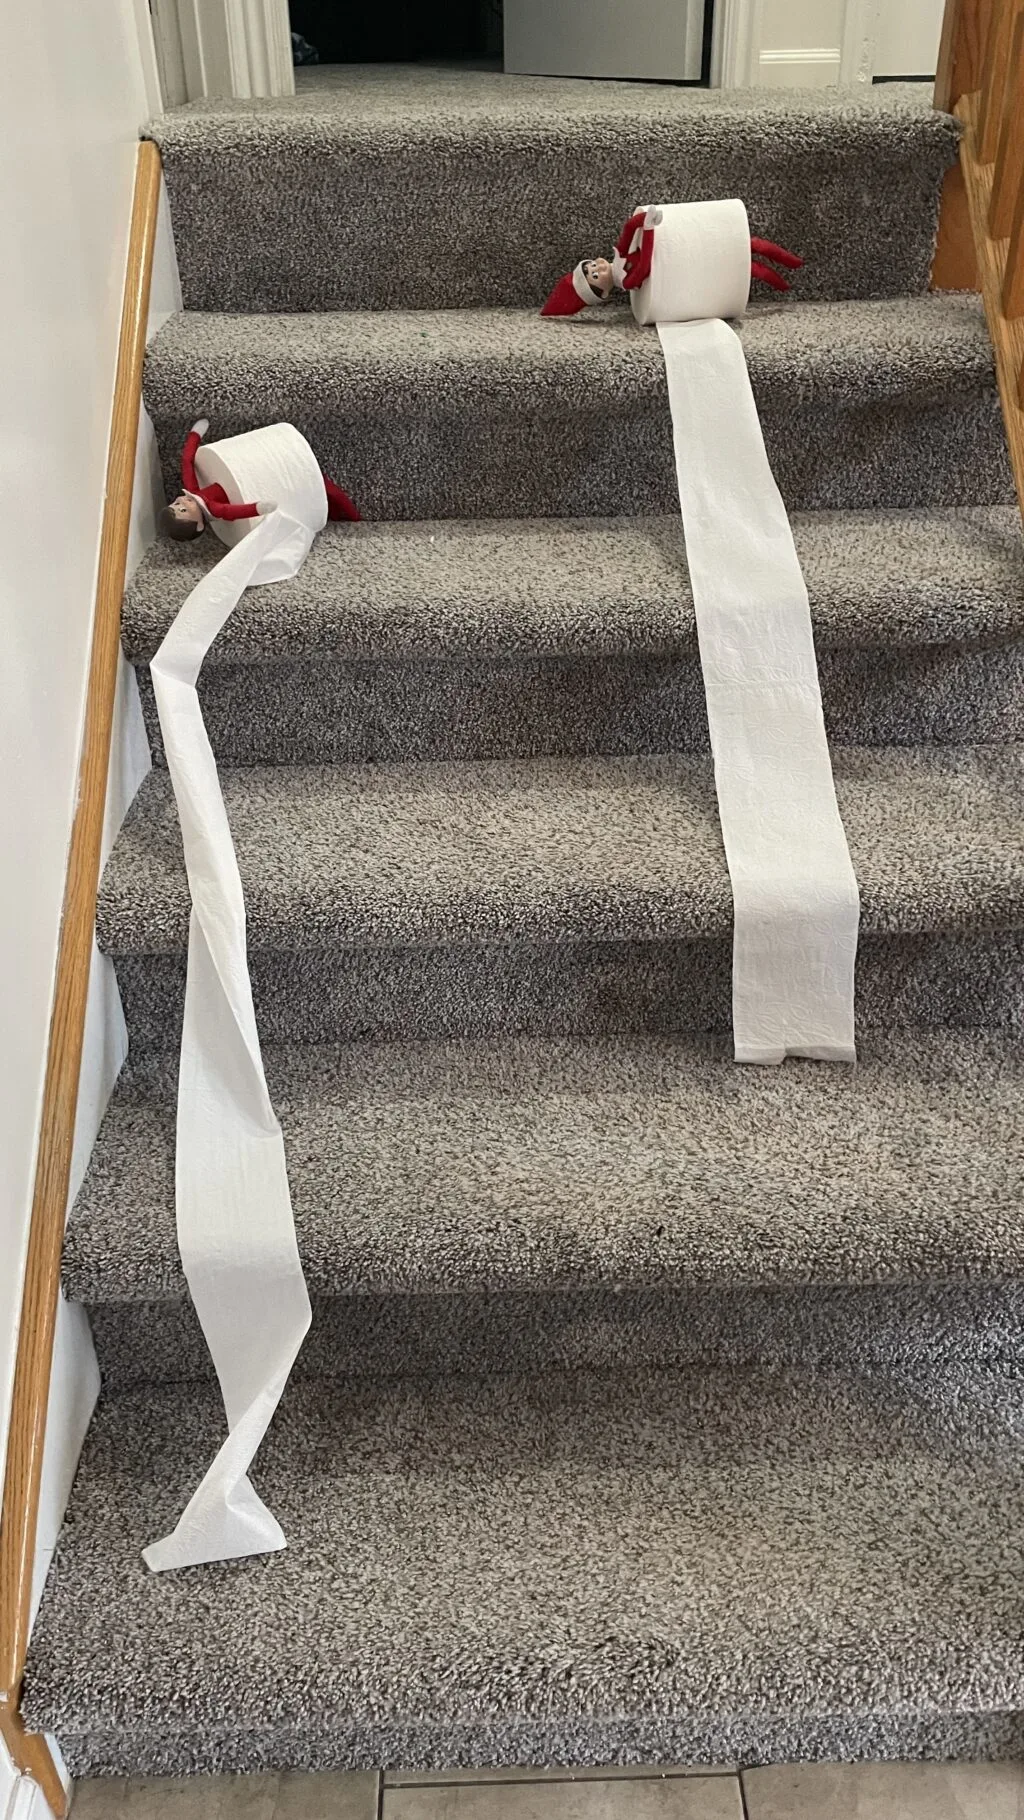 elves arriving in toilet paper rolls